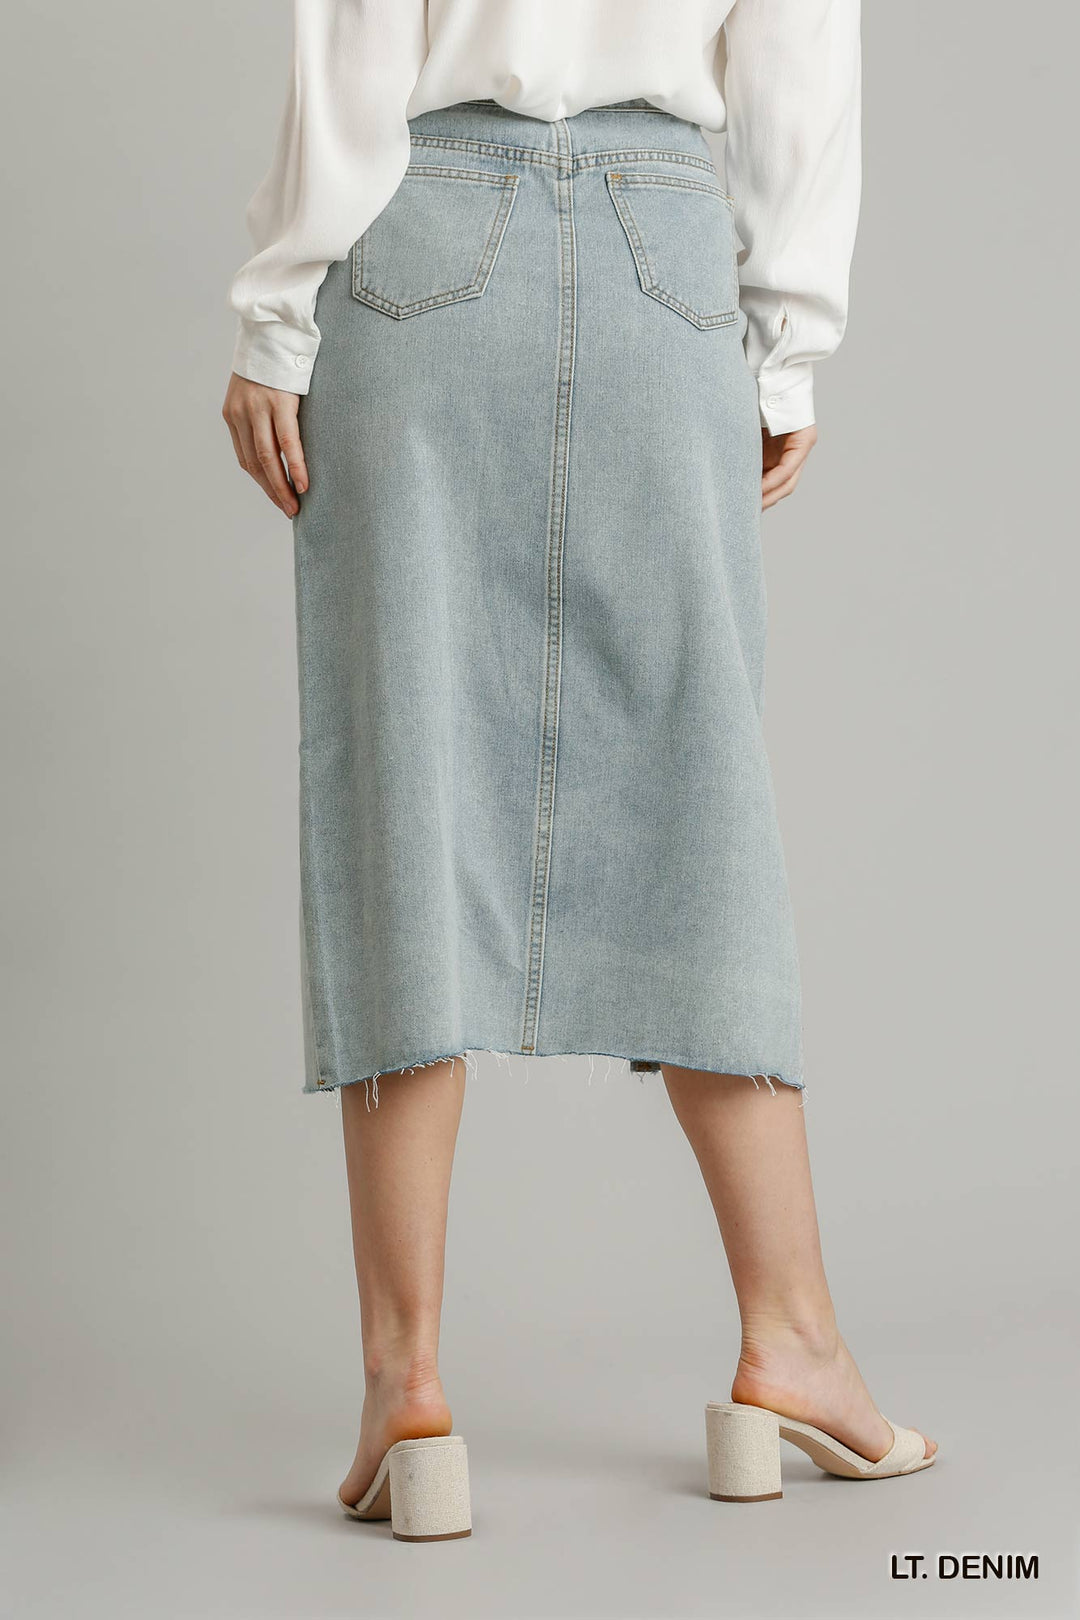 Asymmetrical Waist And Button Up Front Split Denim Skirt